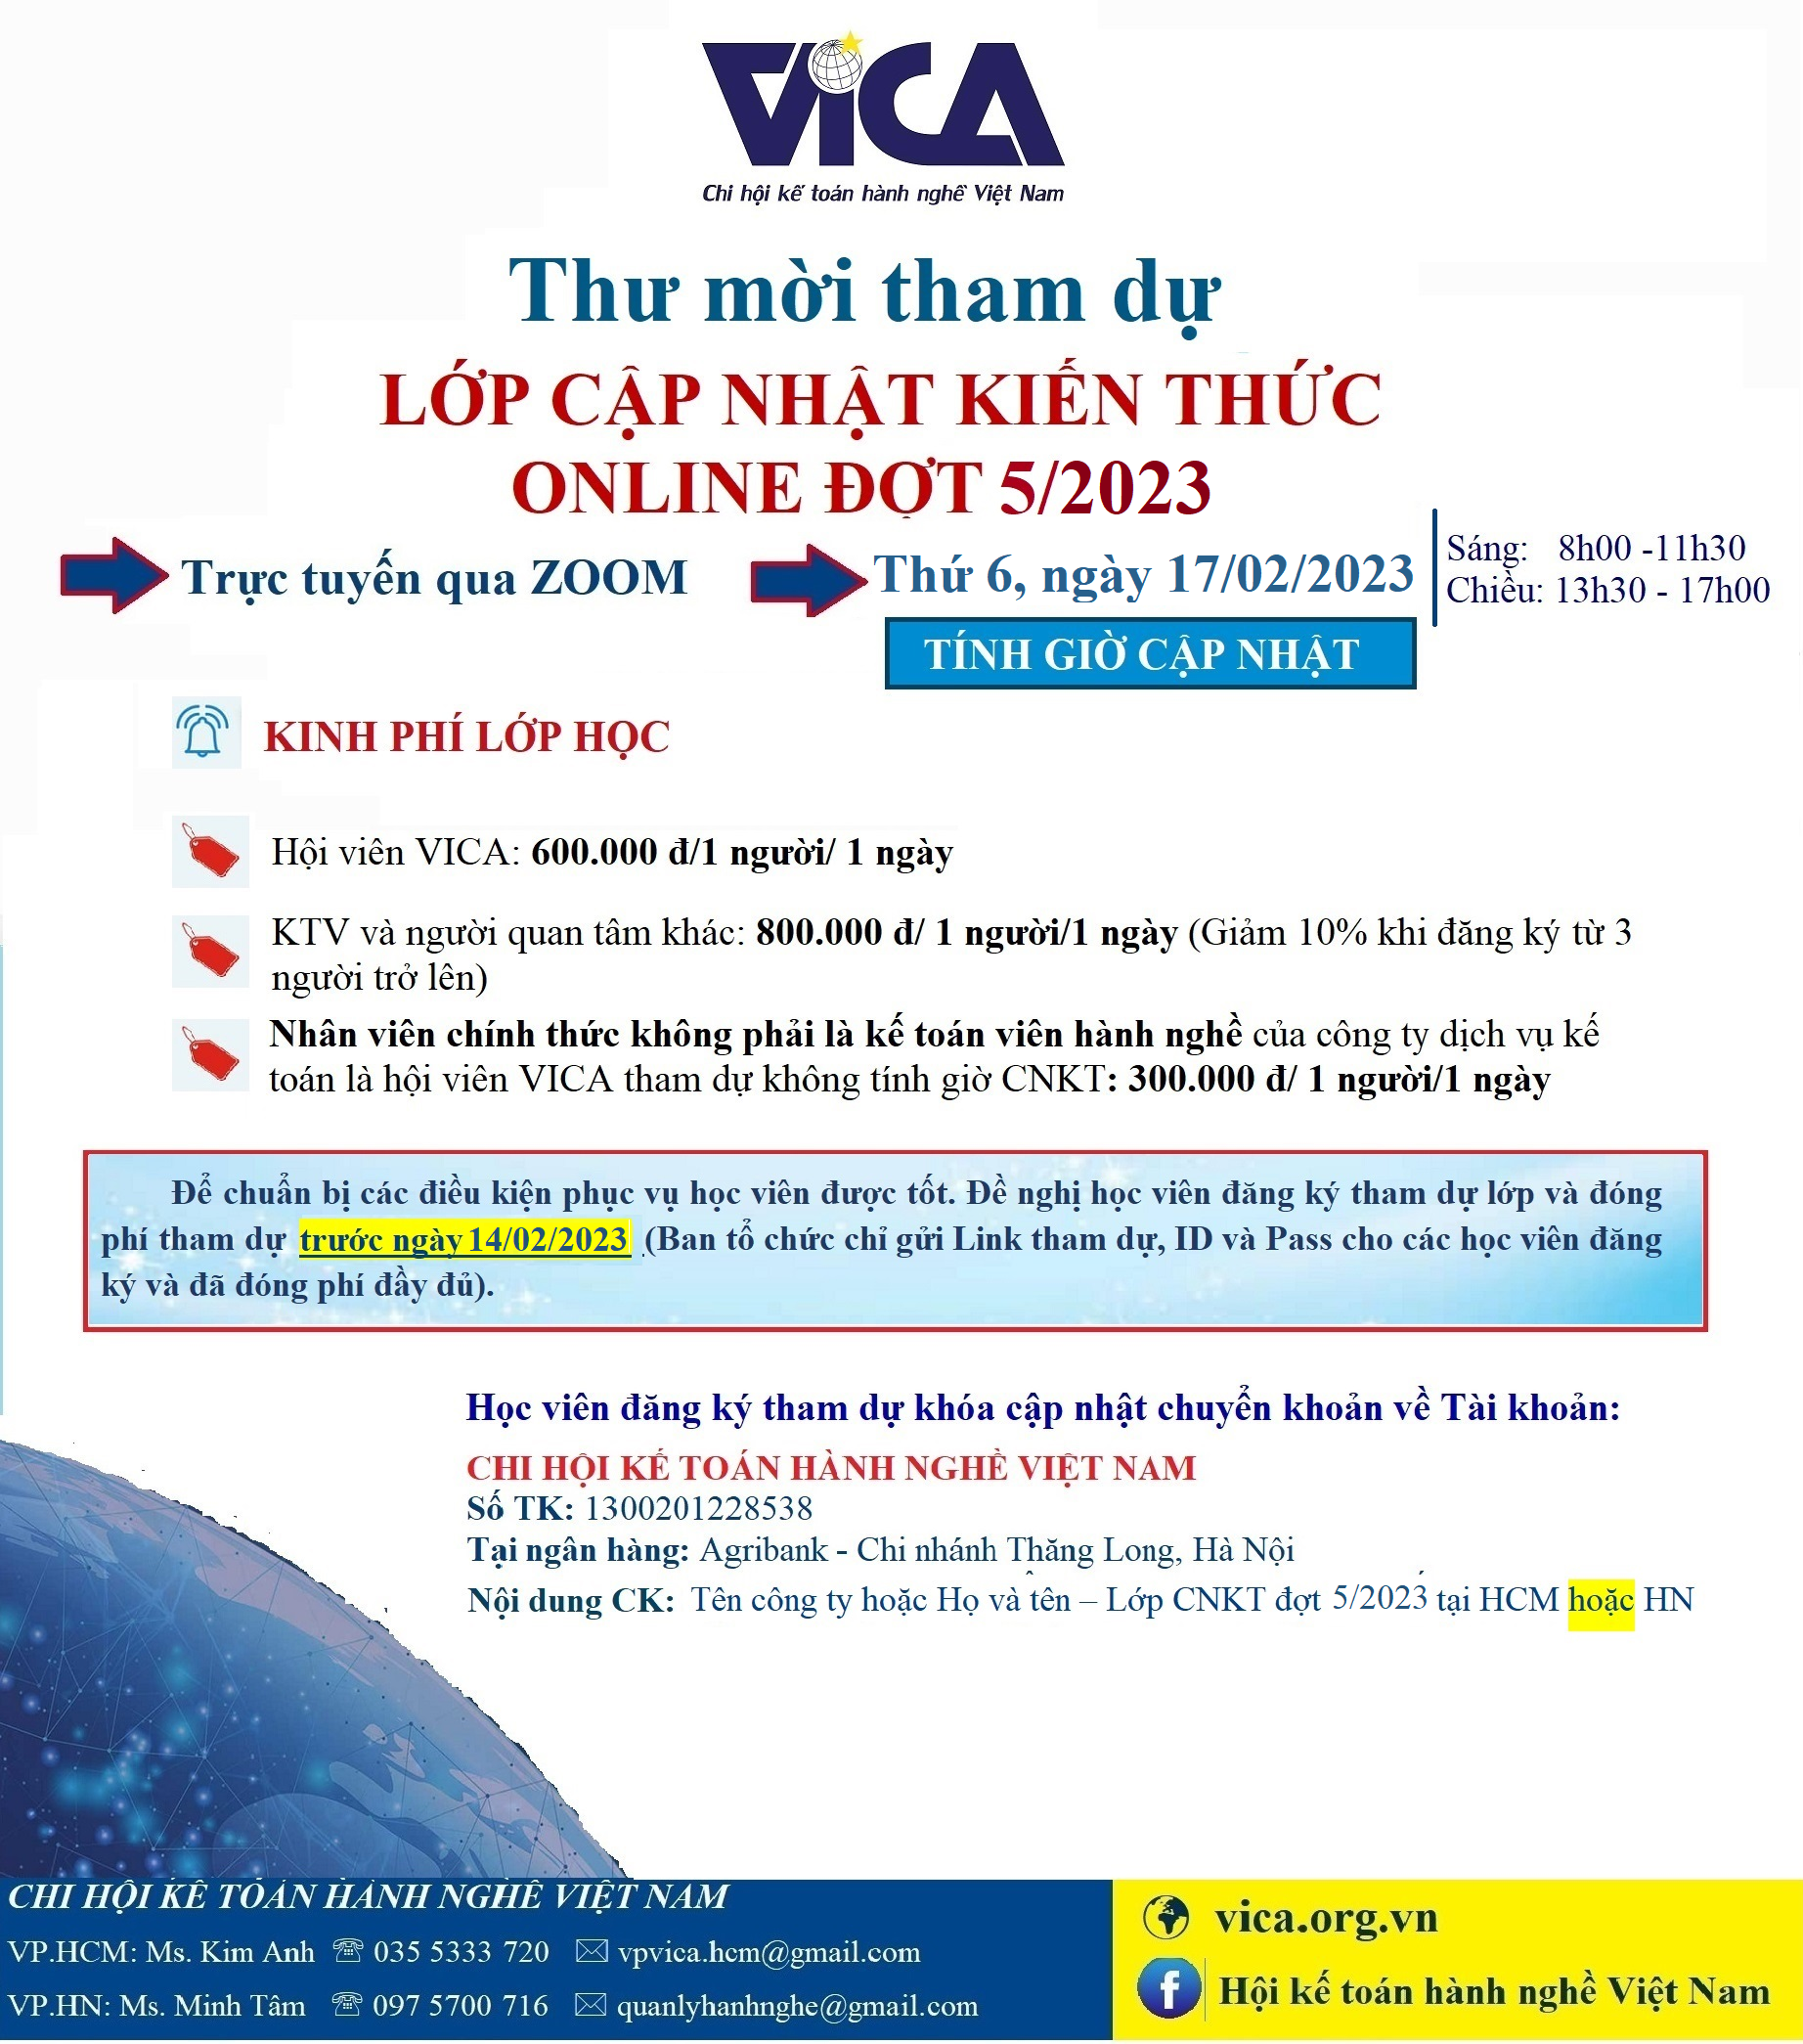 Thư mời lop CNKT dot 5-2023- Online trang 2